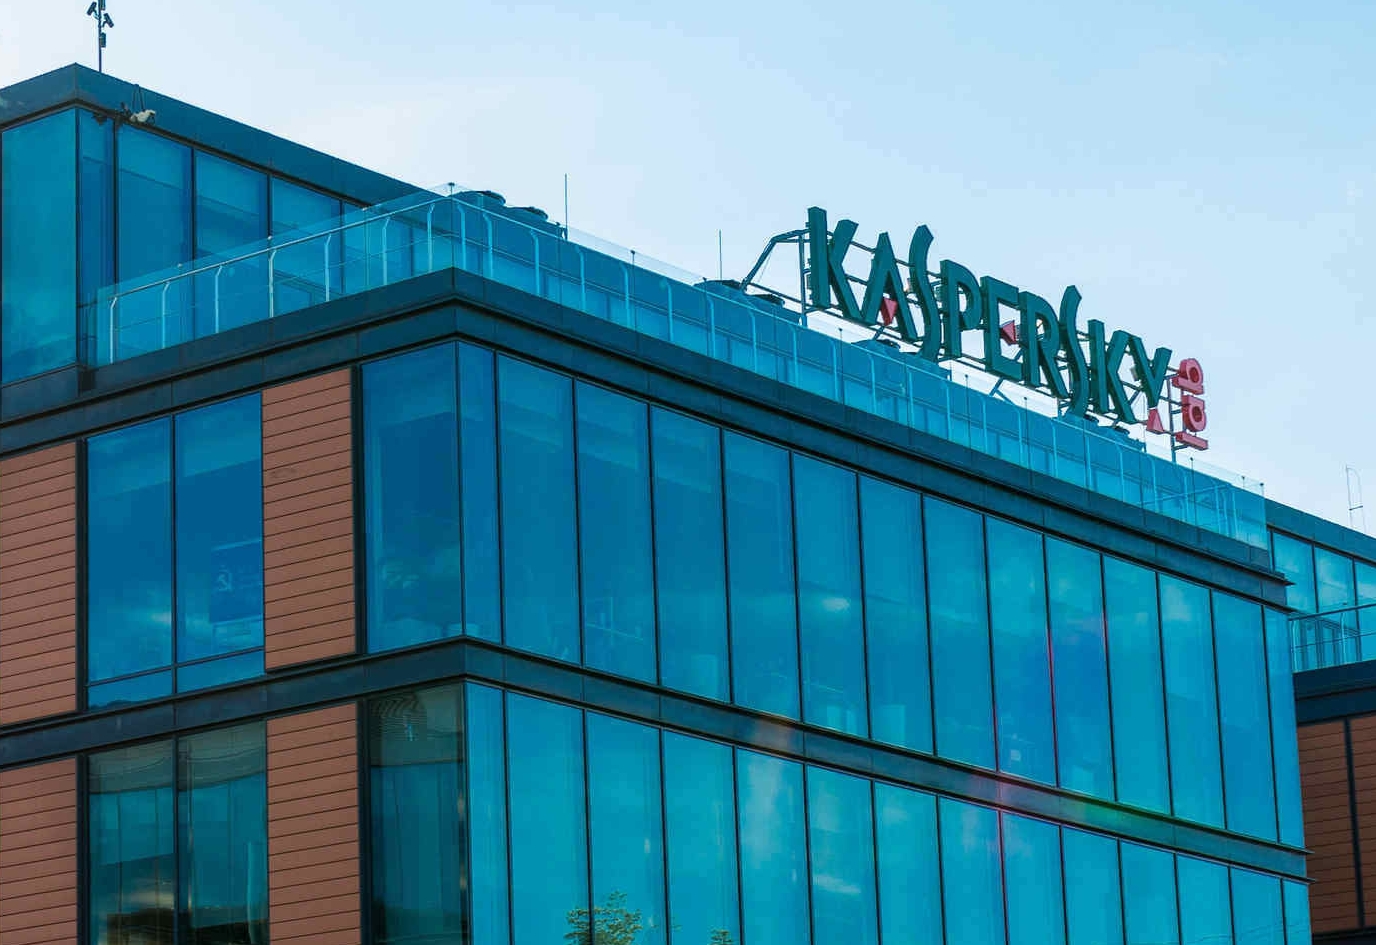 Kaspersky speichert Daten ab Ende 2019 in der Schweiz und eröffnet Transparenzzentrum